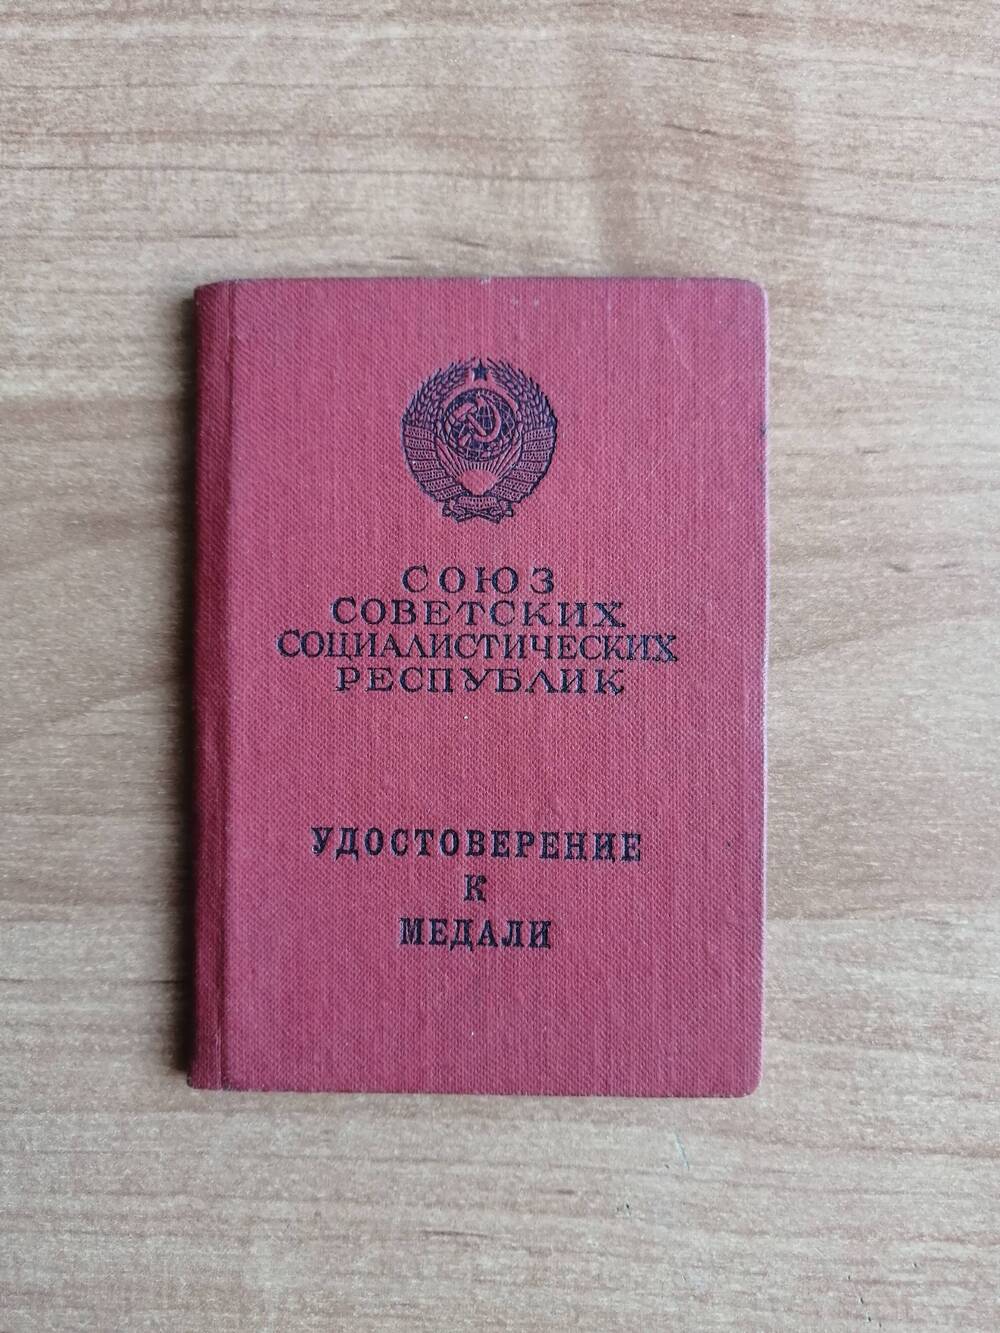 Удостоверение Ж №684647 Червонцева Ивана Кузьмича к медали За боевые заслуги.